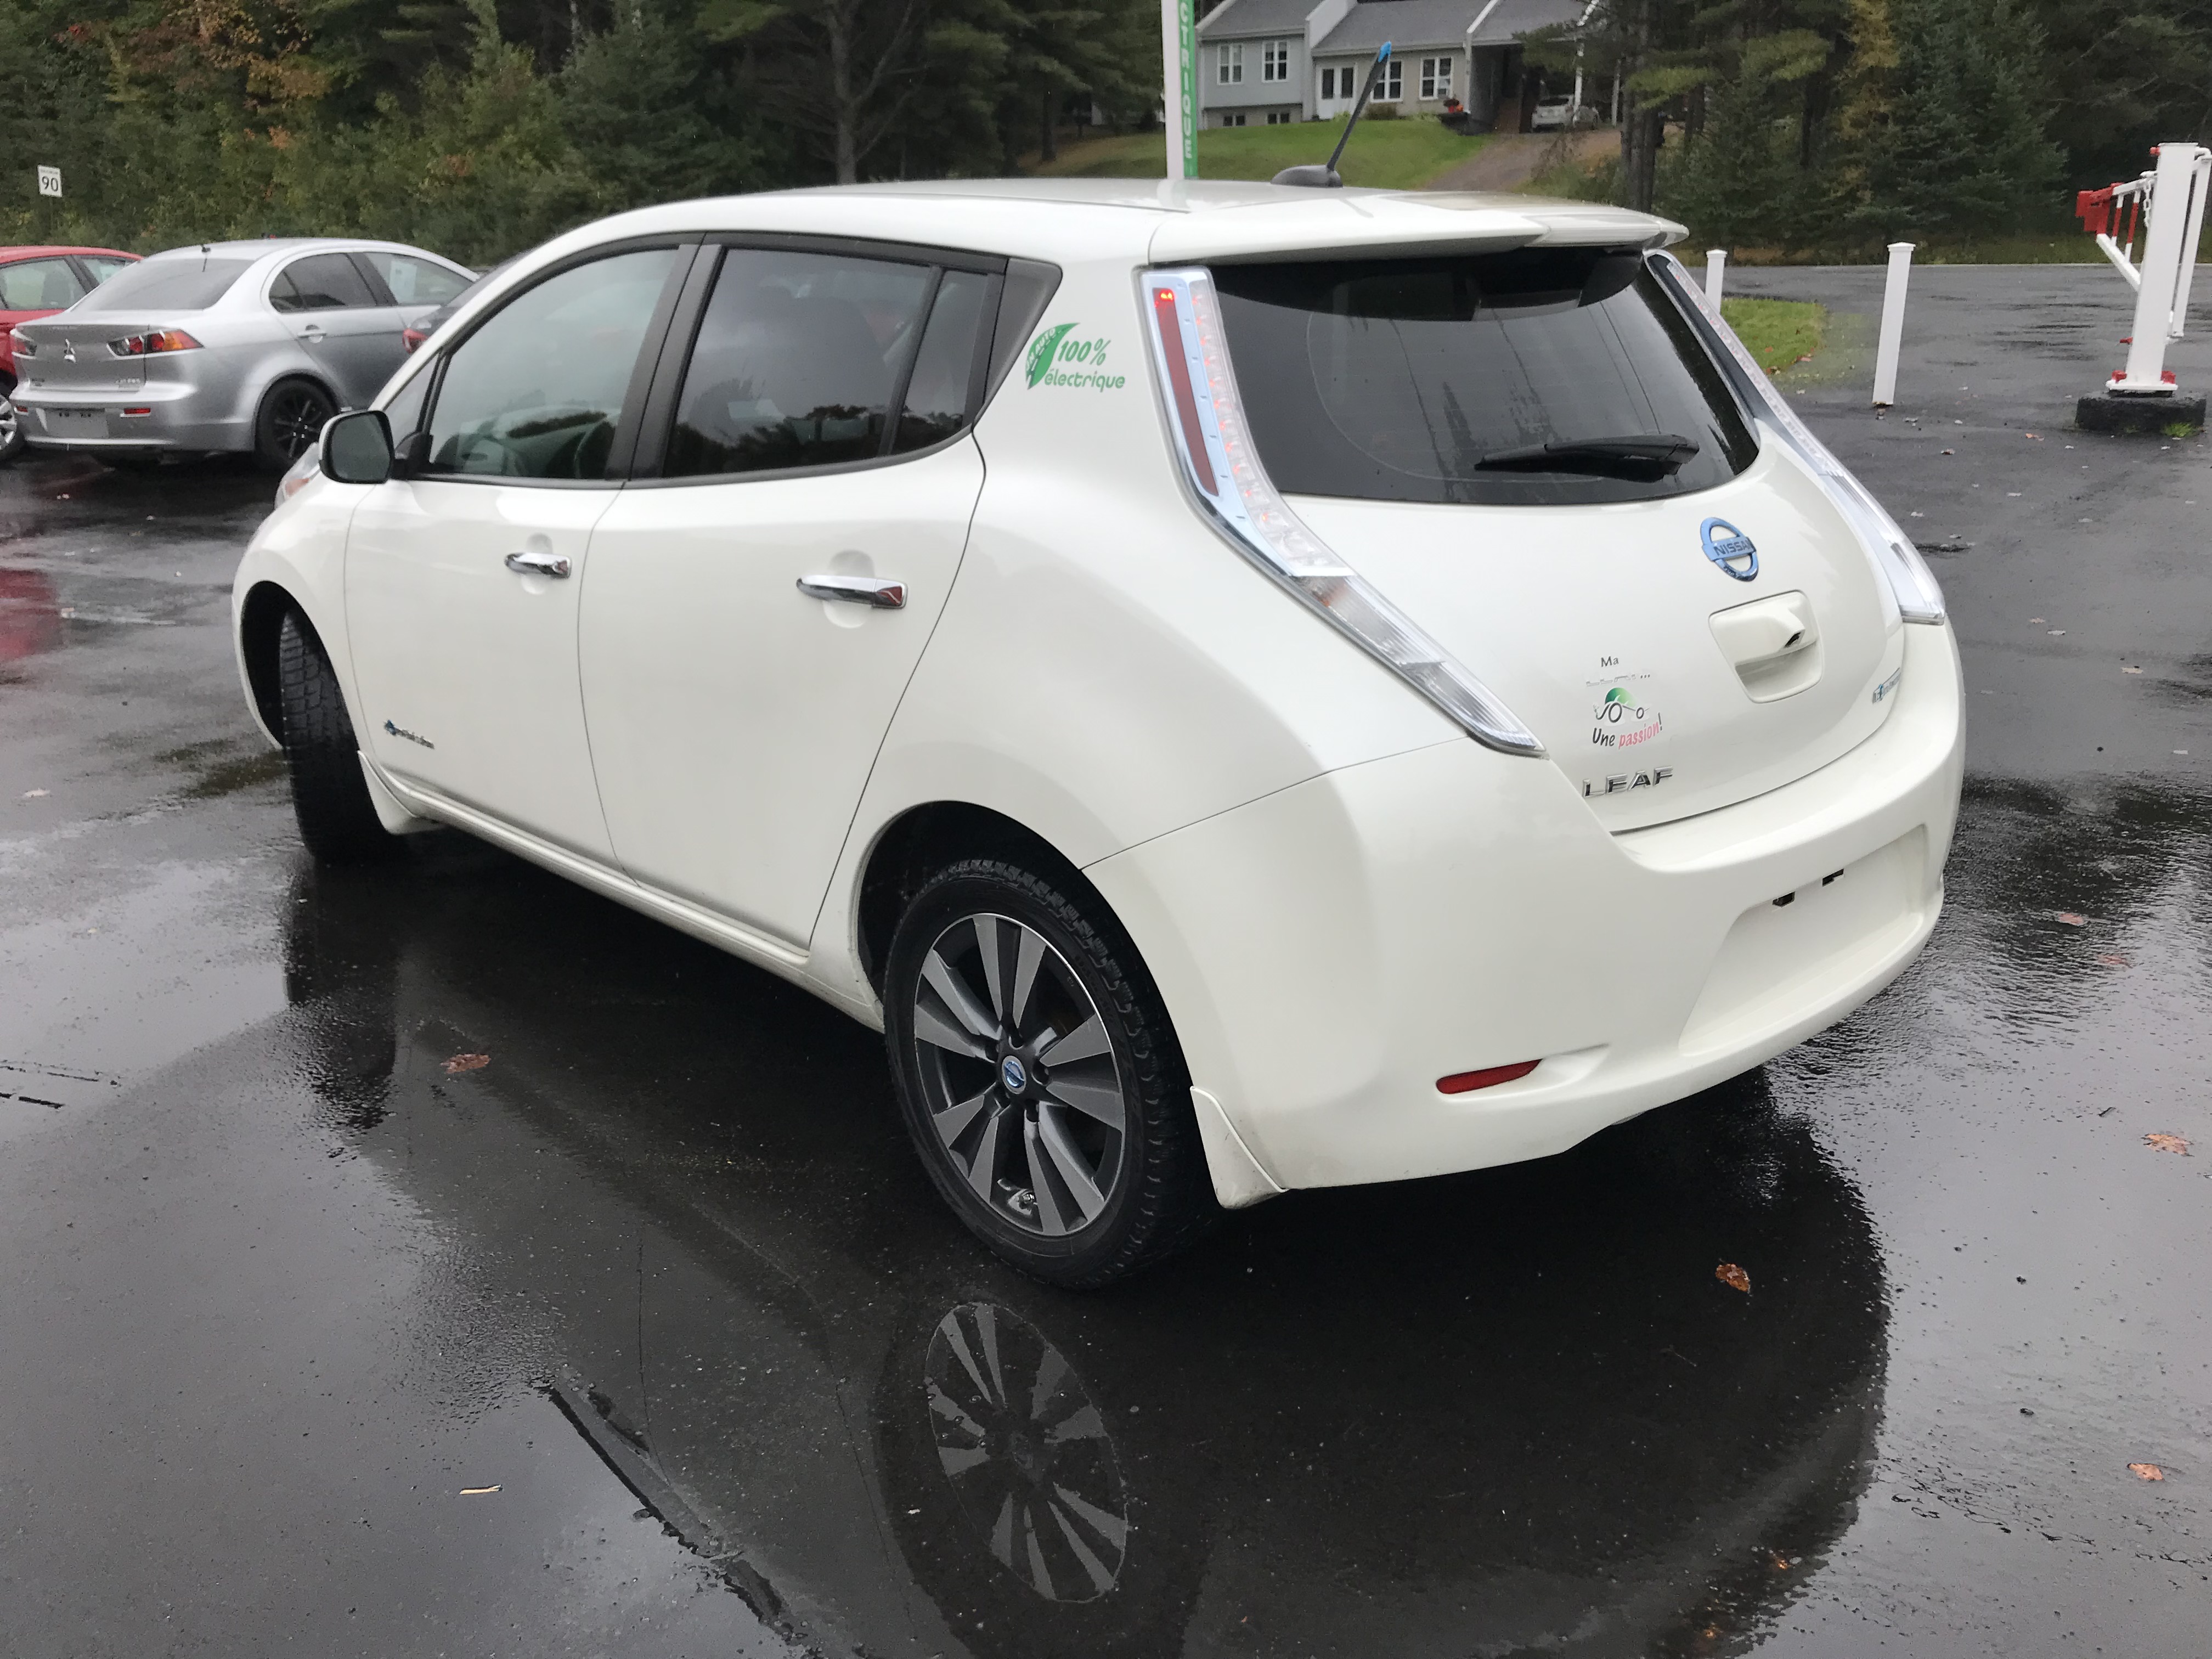 Démarreurs à distance pour véhicules électriques, JnAuto.com, Cleveland,  Richmond, Quebec, Canada